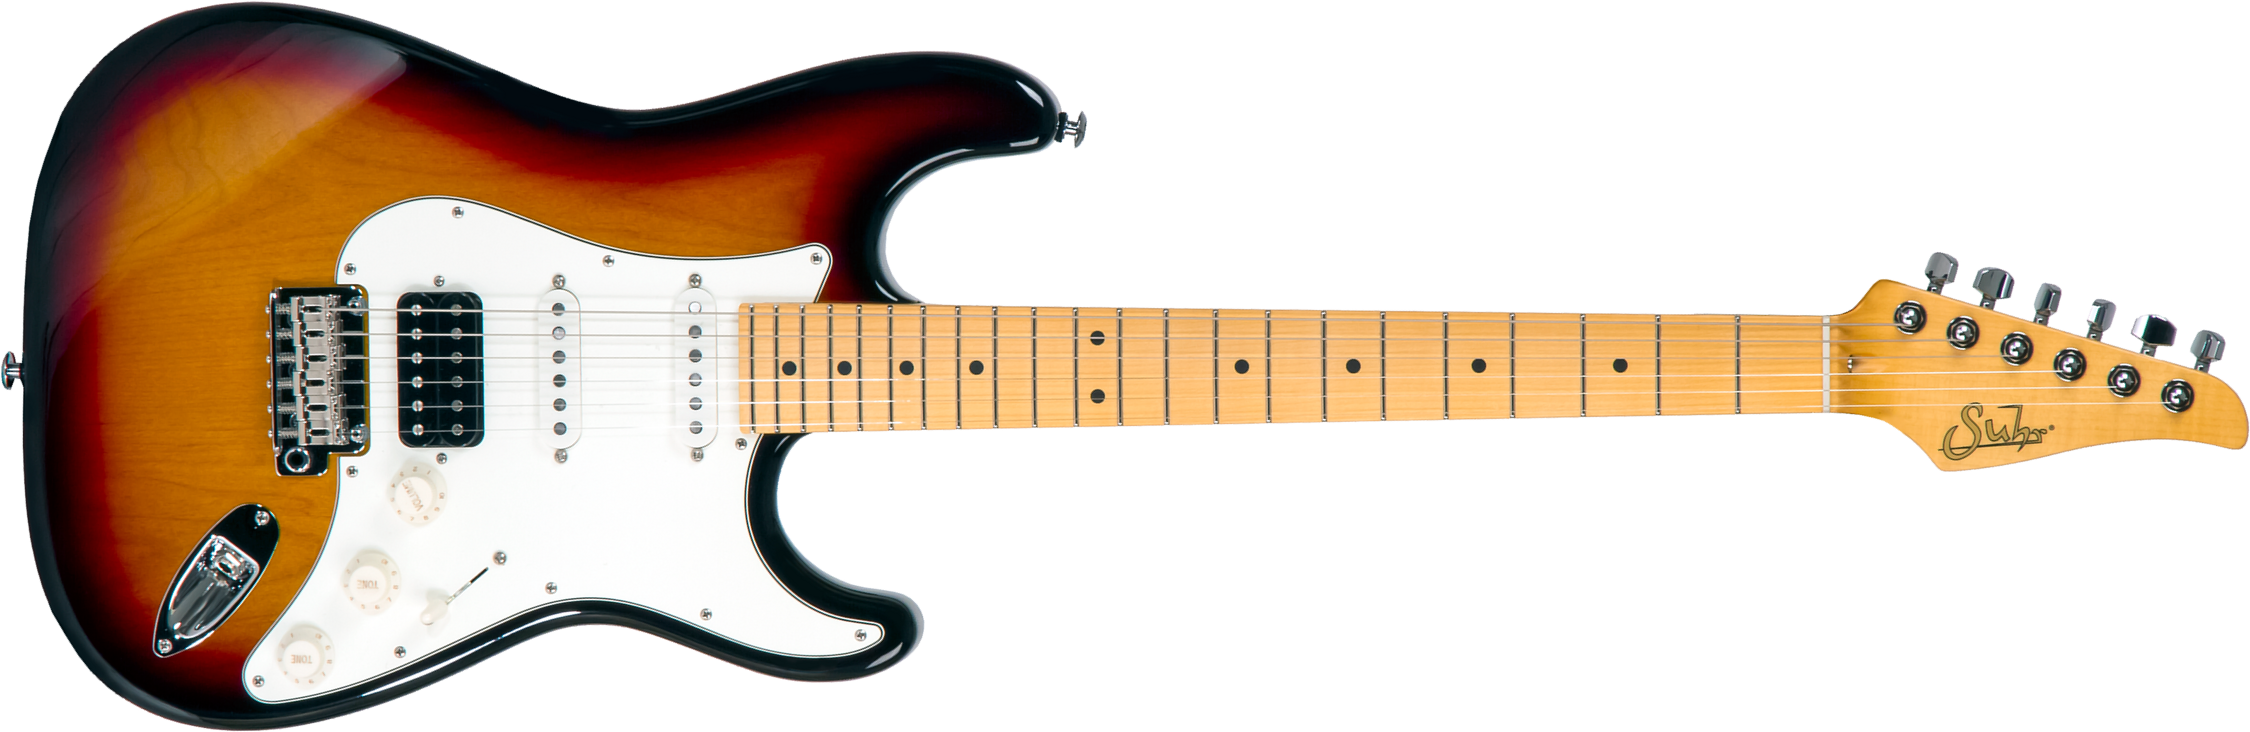 Suhr Classic S 01-cls-0003 Hss Trem Mn #70325 - 3 Tone Burst - Guitarra eléctrica con forma de str. - Main picture